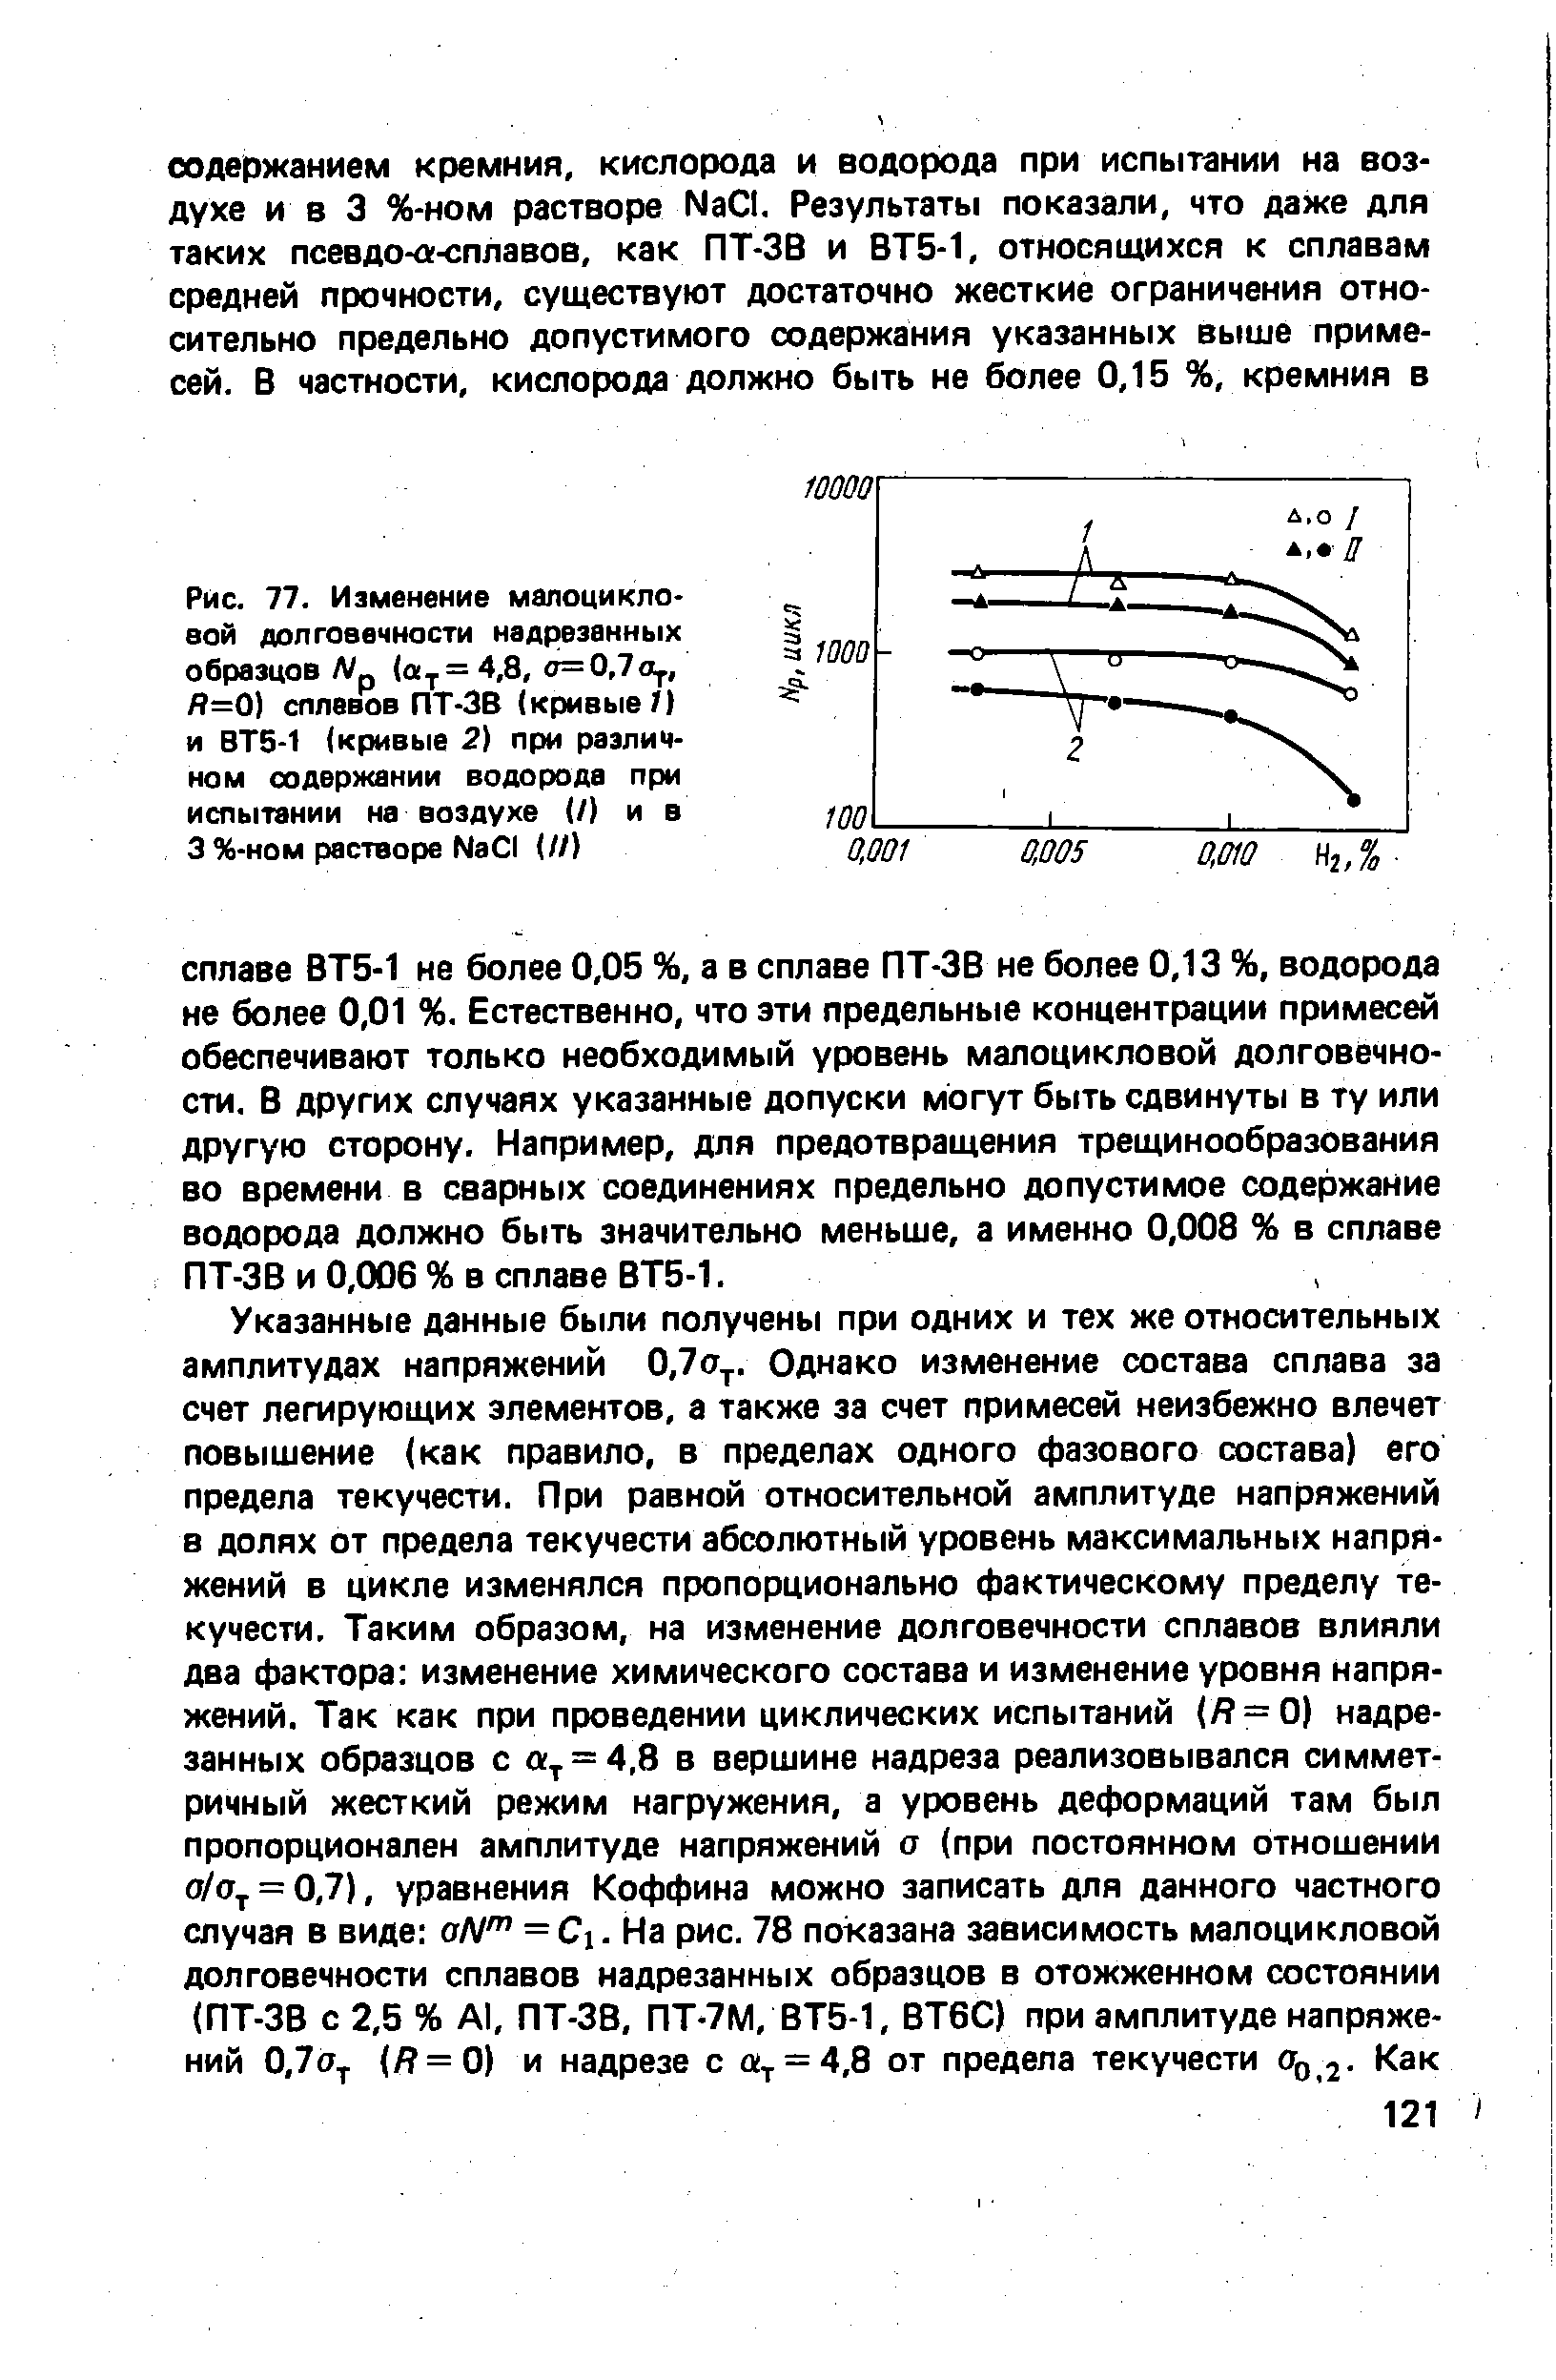 Рис. 77. Изменение малоцикло-вой долговечности надрезанных образцов Np (ау=4,8, а=0,7а , й=0) сплевов ПТ-ЗВ (кривые ) и ВТ5-1 (кривые 2) при различном содержании водорода при испытании на воздухе (/) и в 3 %-ном растворе МаС1 (//)
